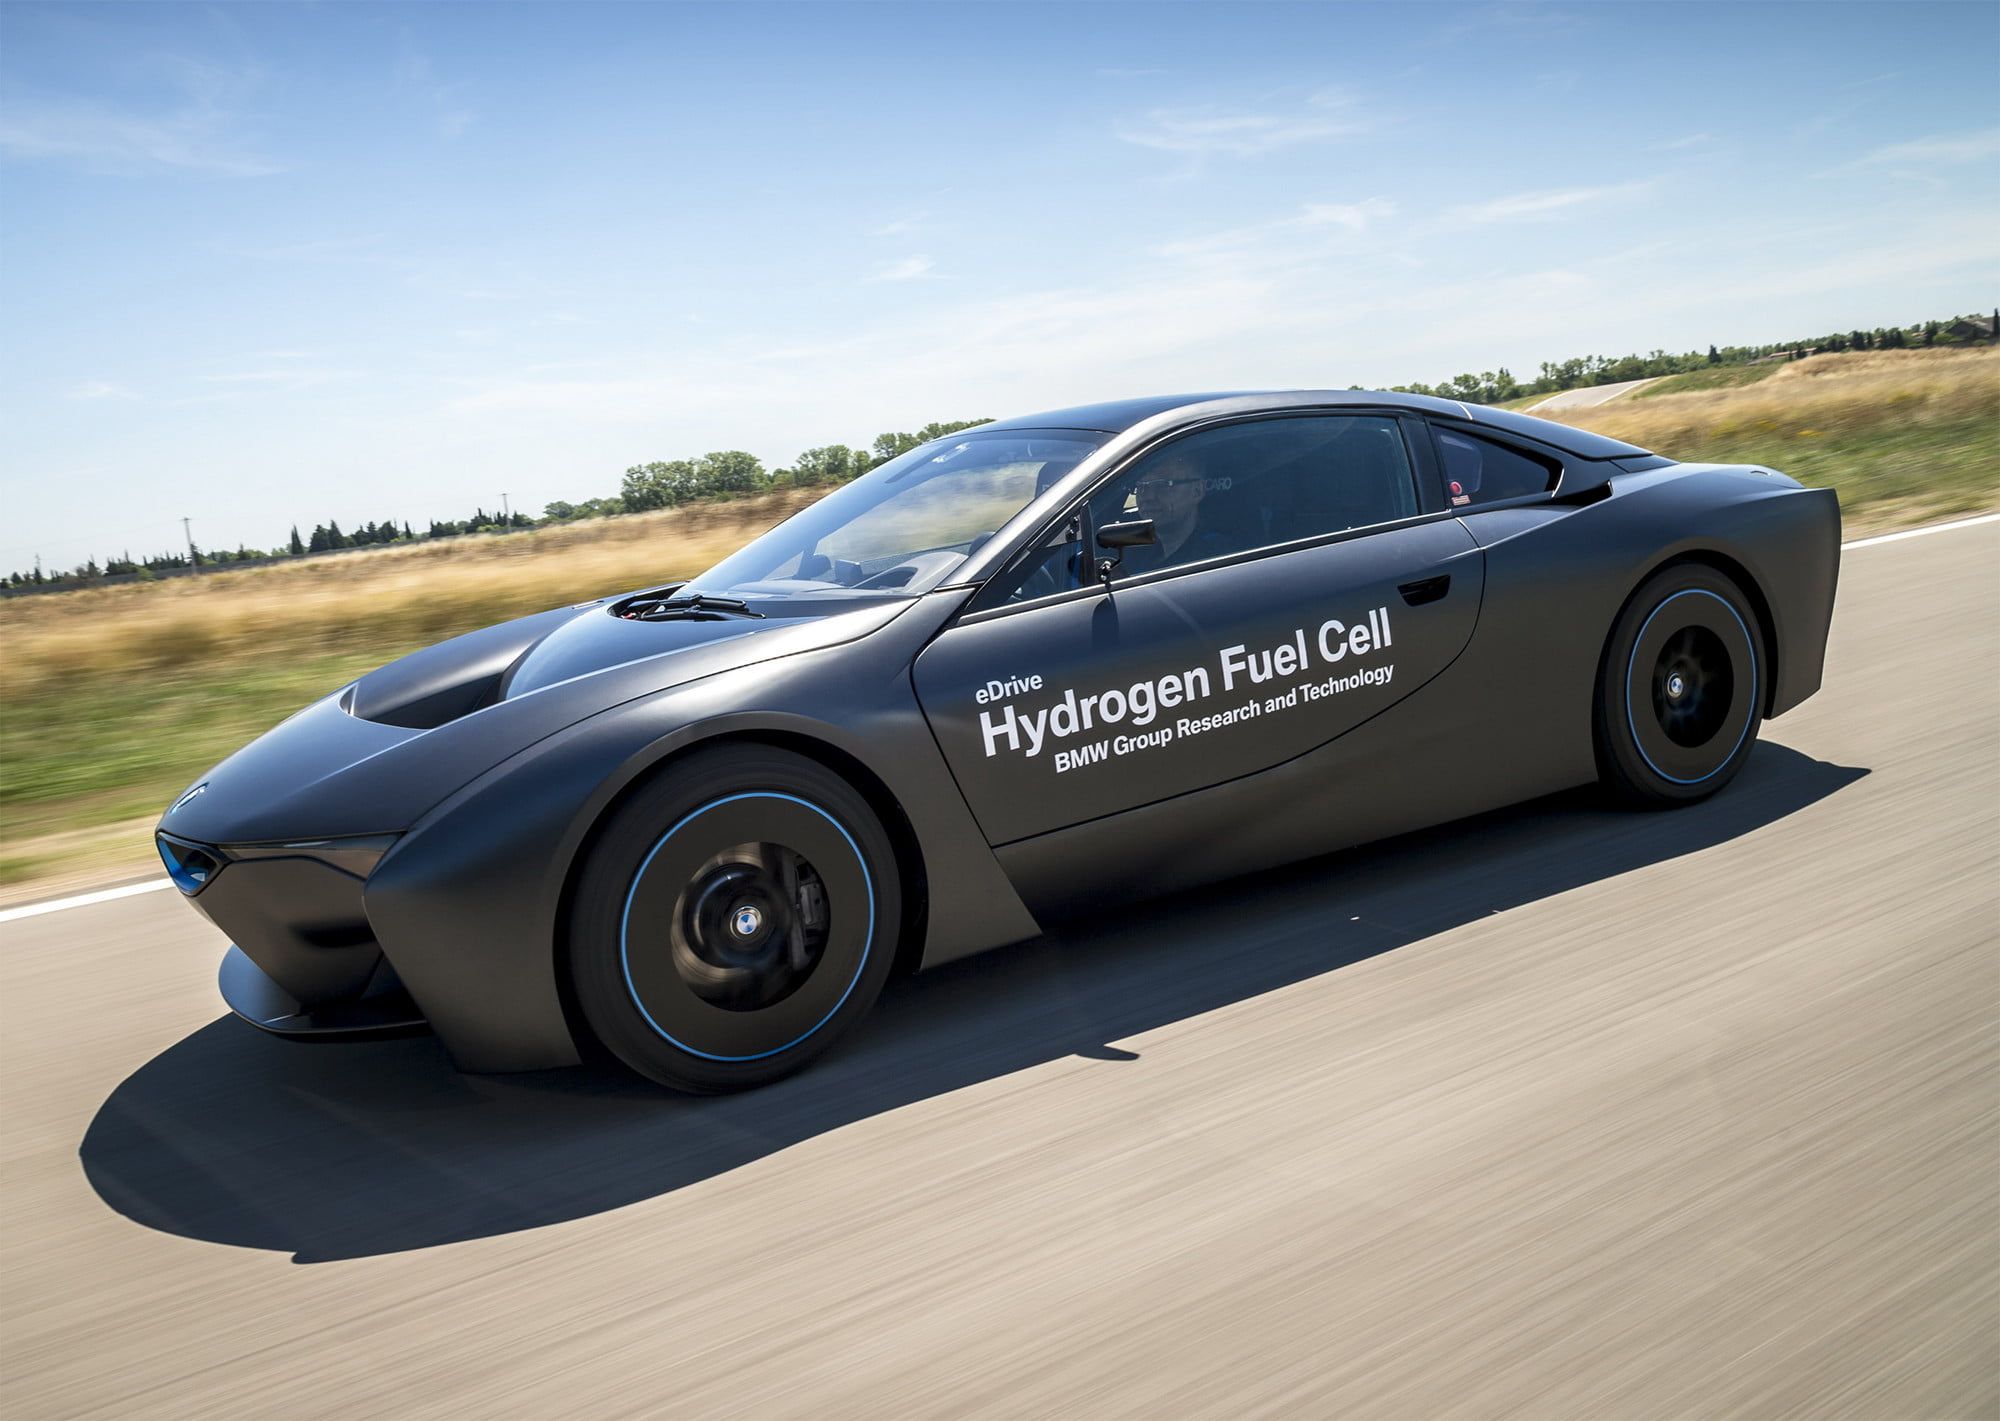 Hydrogen-powered test vehicle